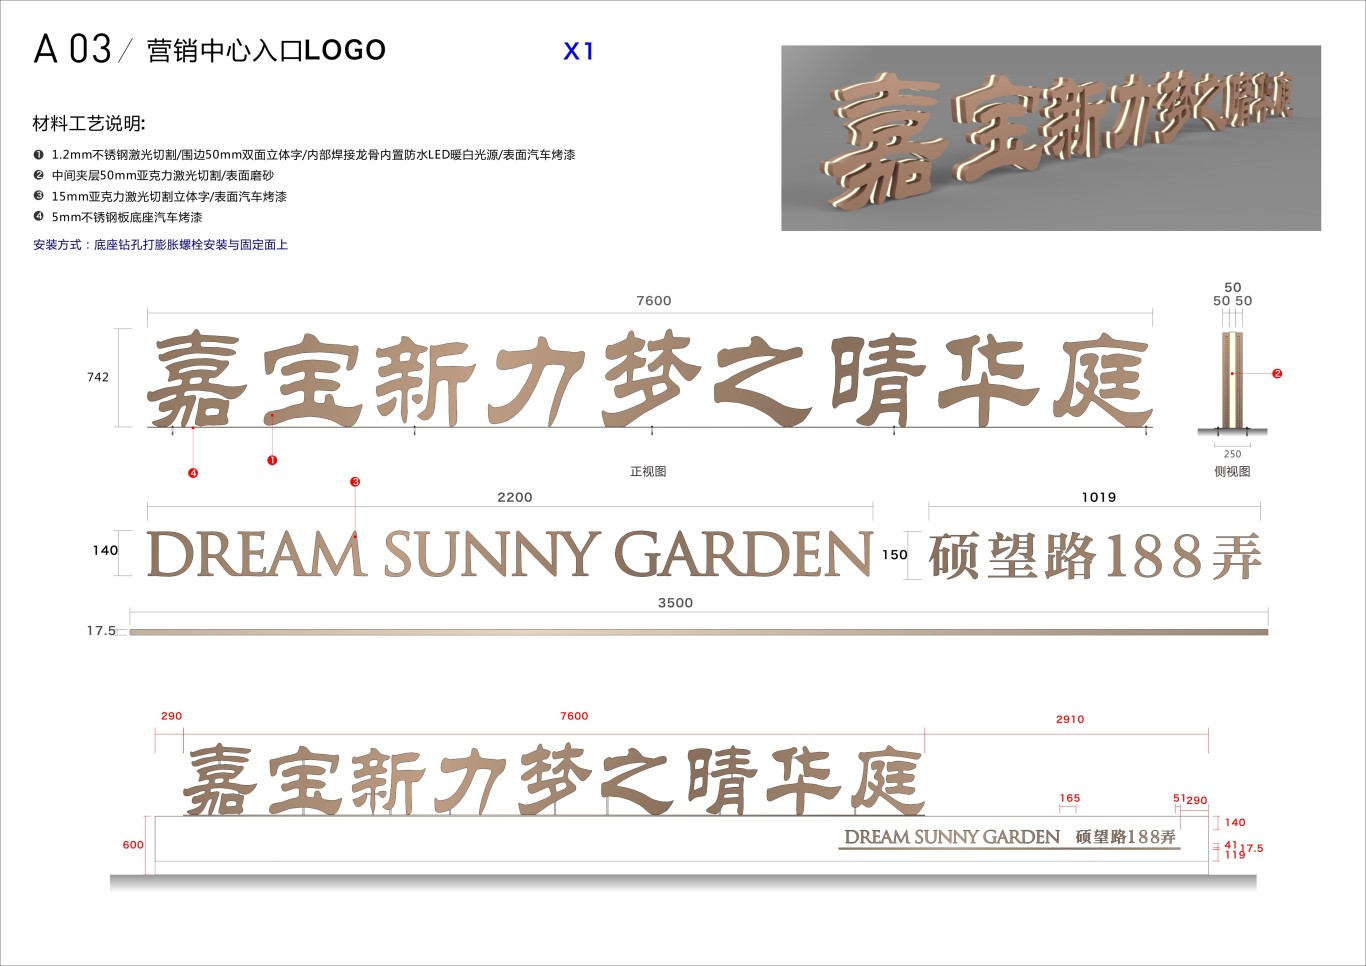 上海嘉宝梦之晴华庭房地产标识系统设计图0